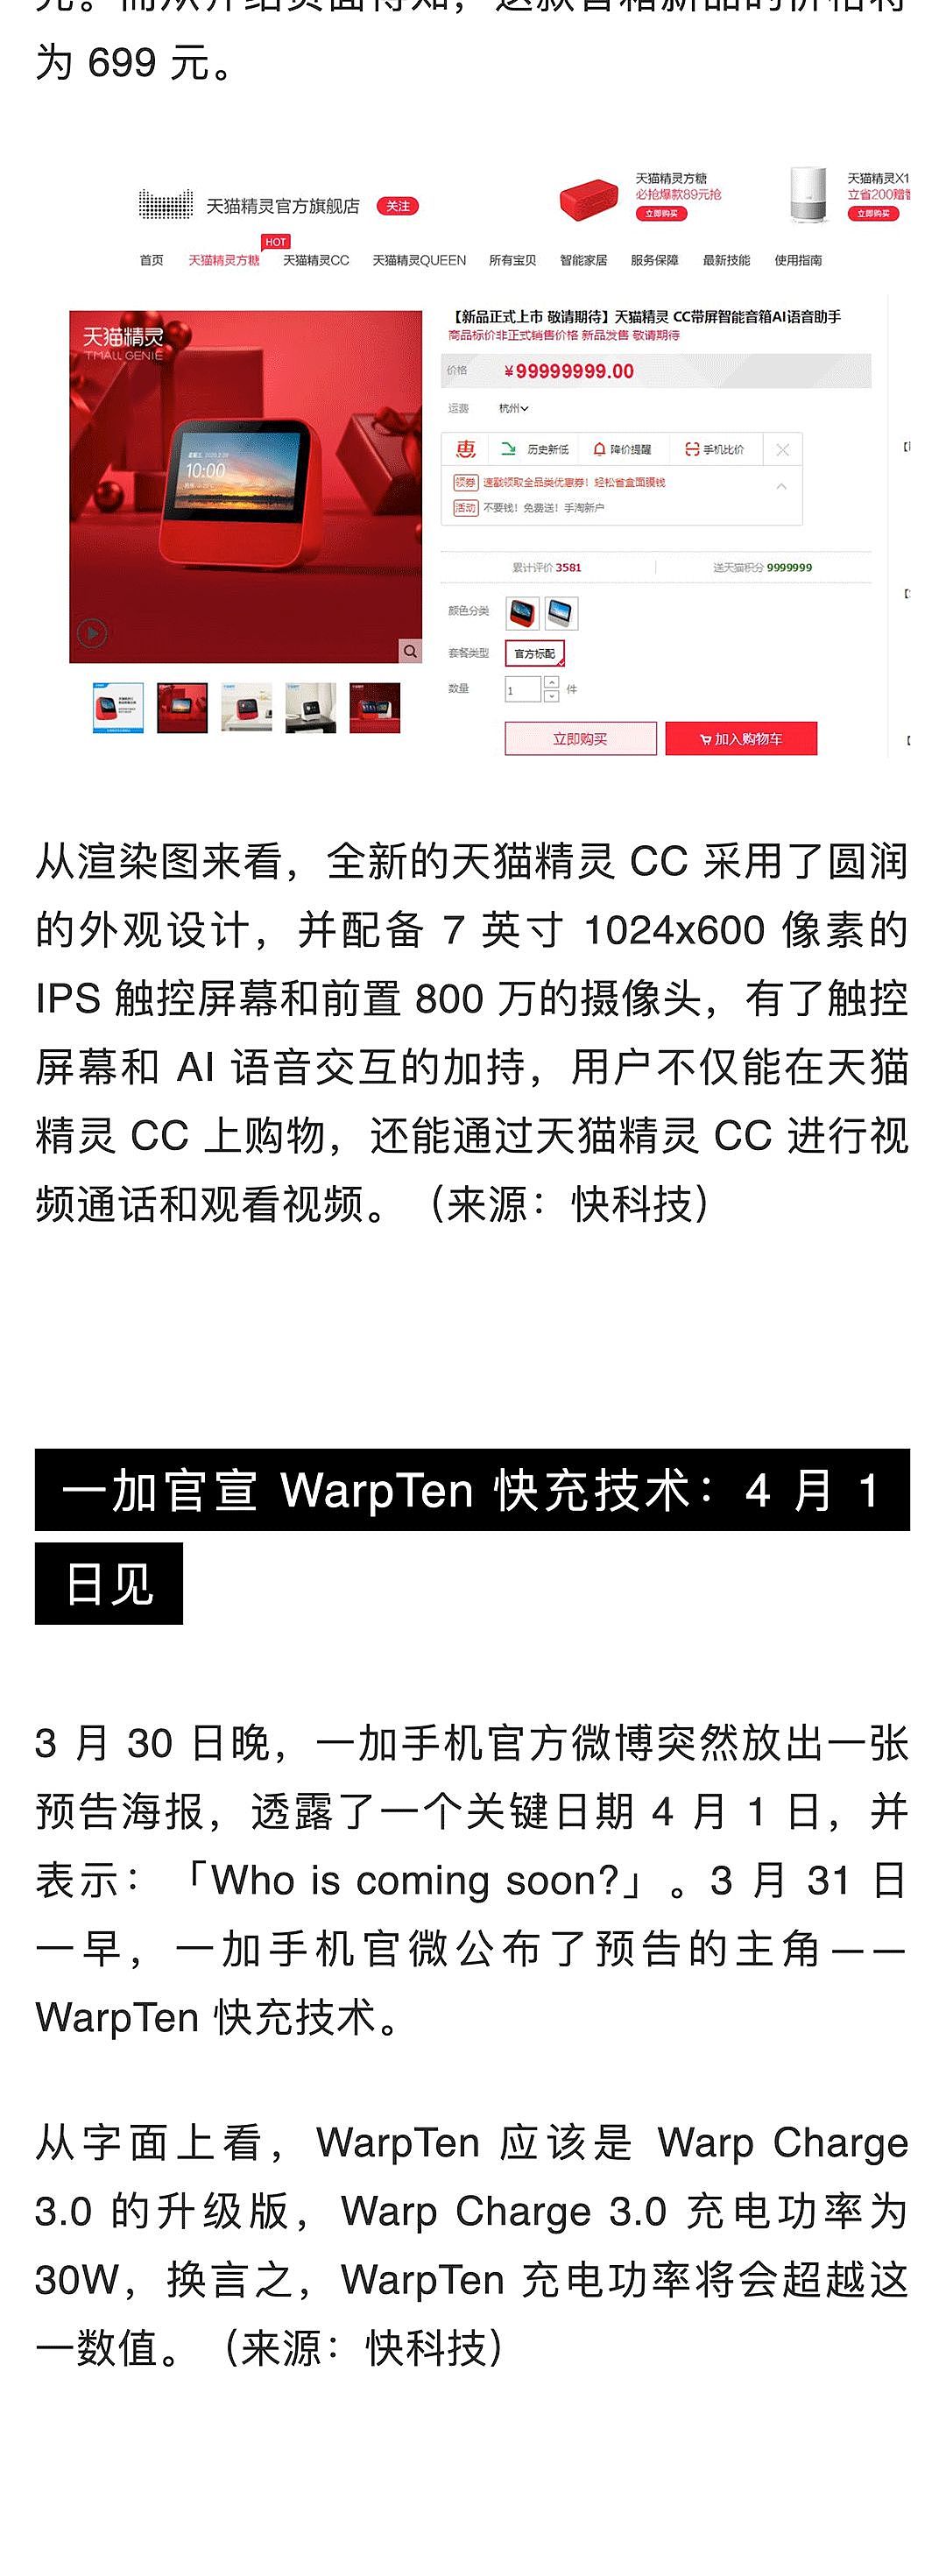 苹果中国全线降价约 3%；熊猫直播宣布正式关闭；苹果挖角特斯拉工程副总裁 | 极客早知道 - 7